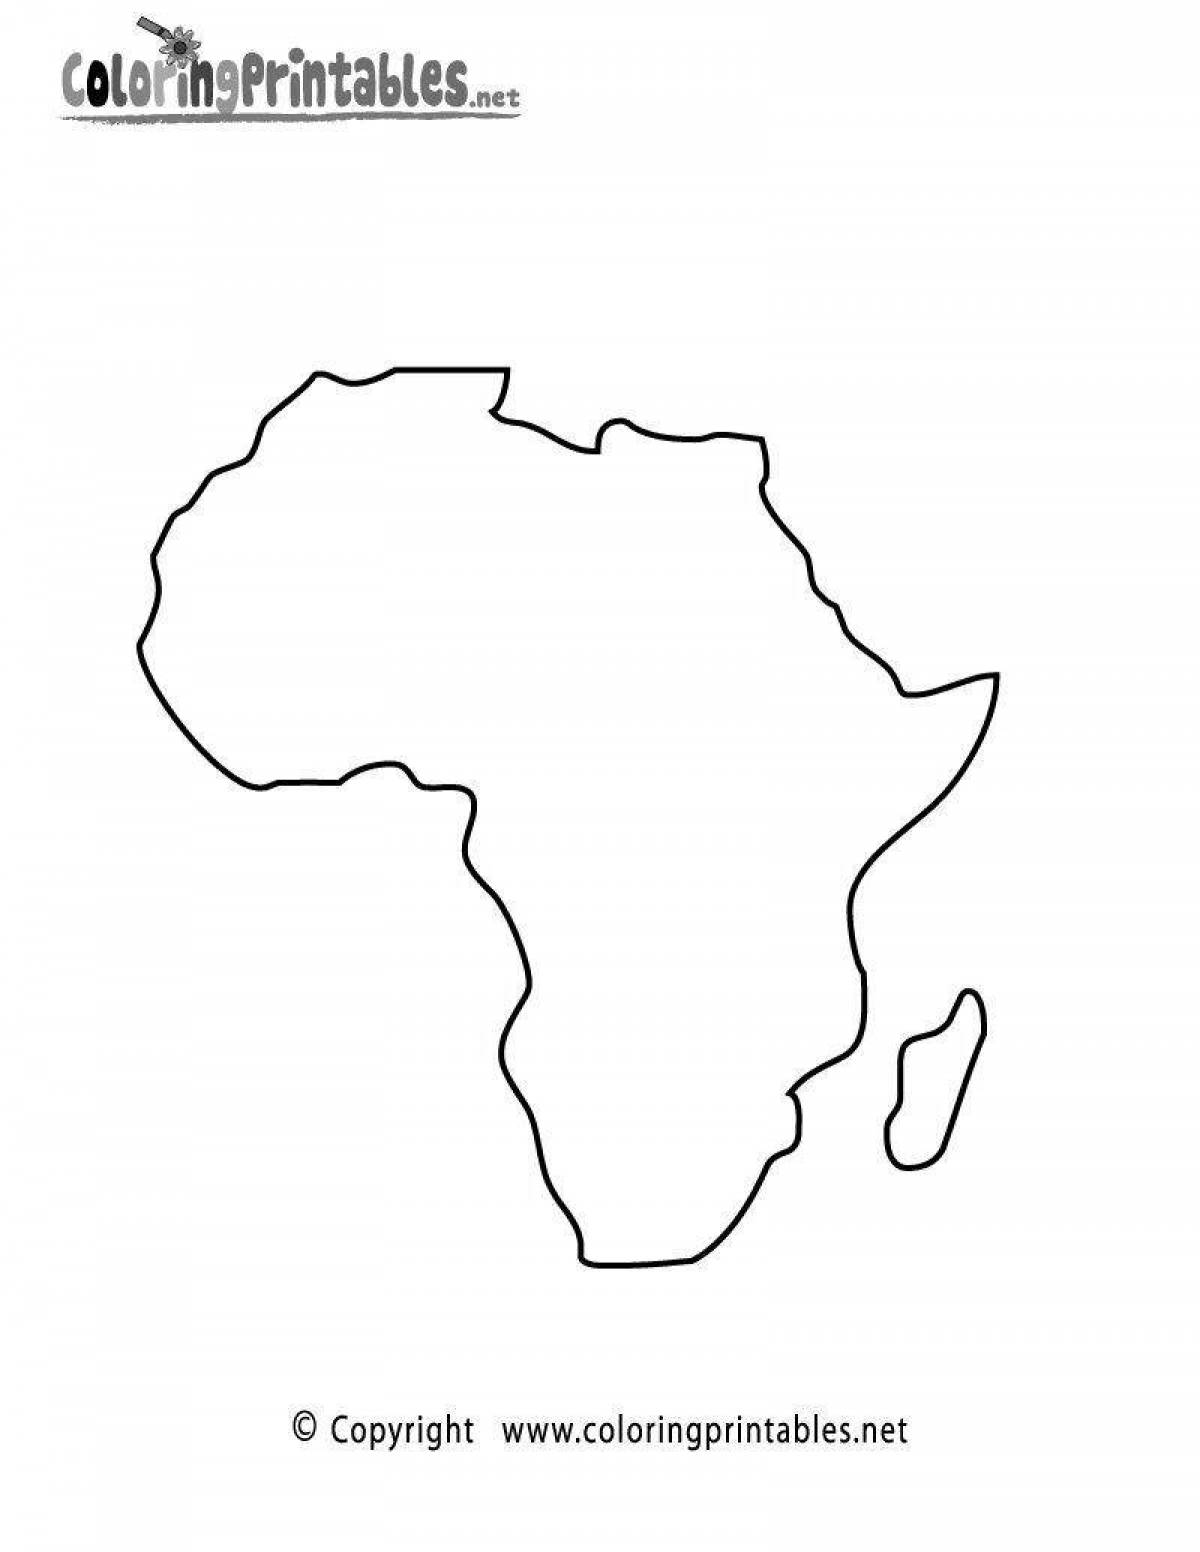 Раскраска ослепительная карта африки